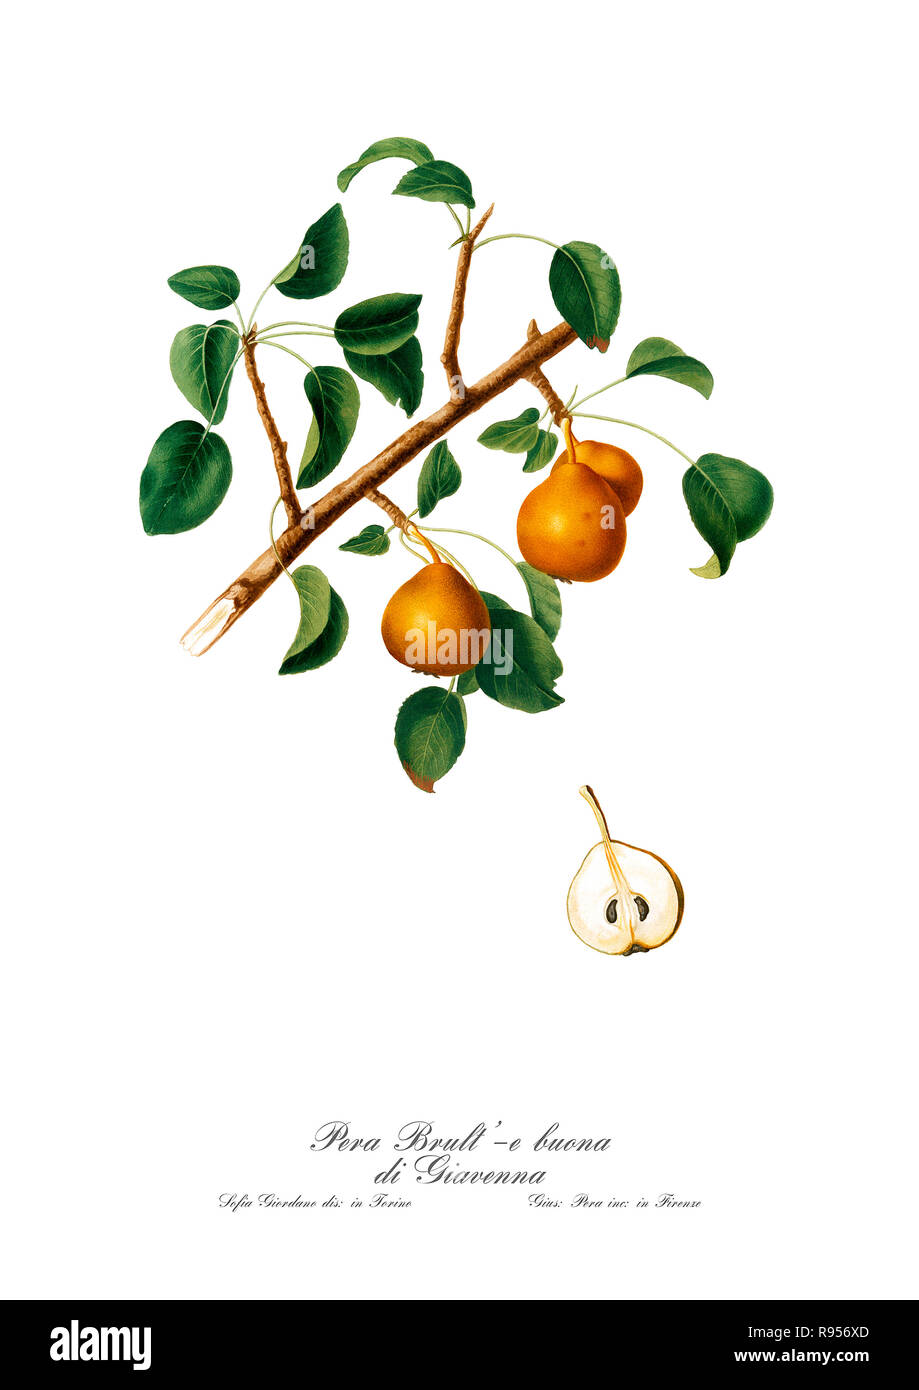 Vintage botaniche uniche illustrazione di una pera. Foto Stock